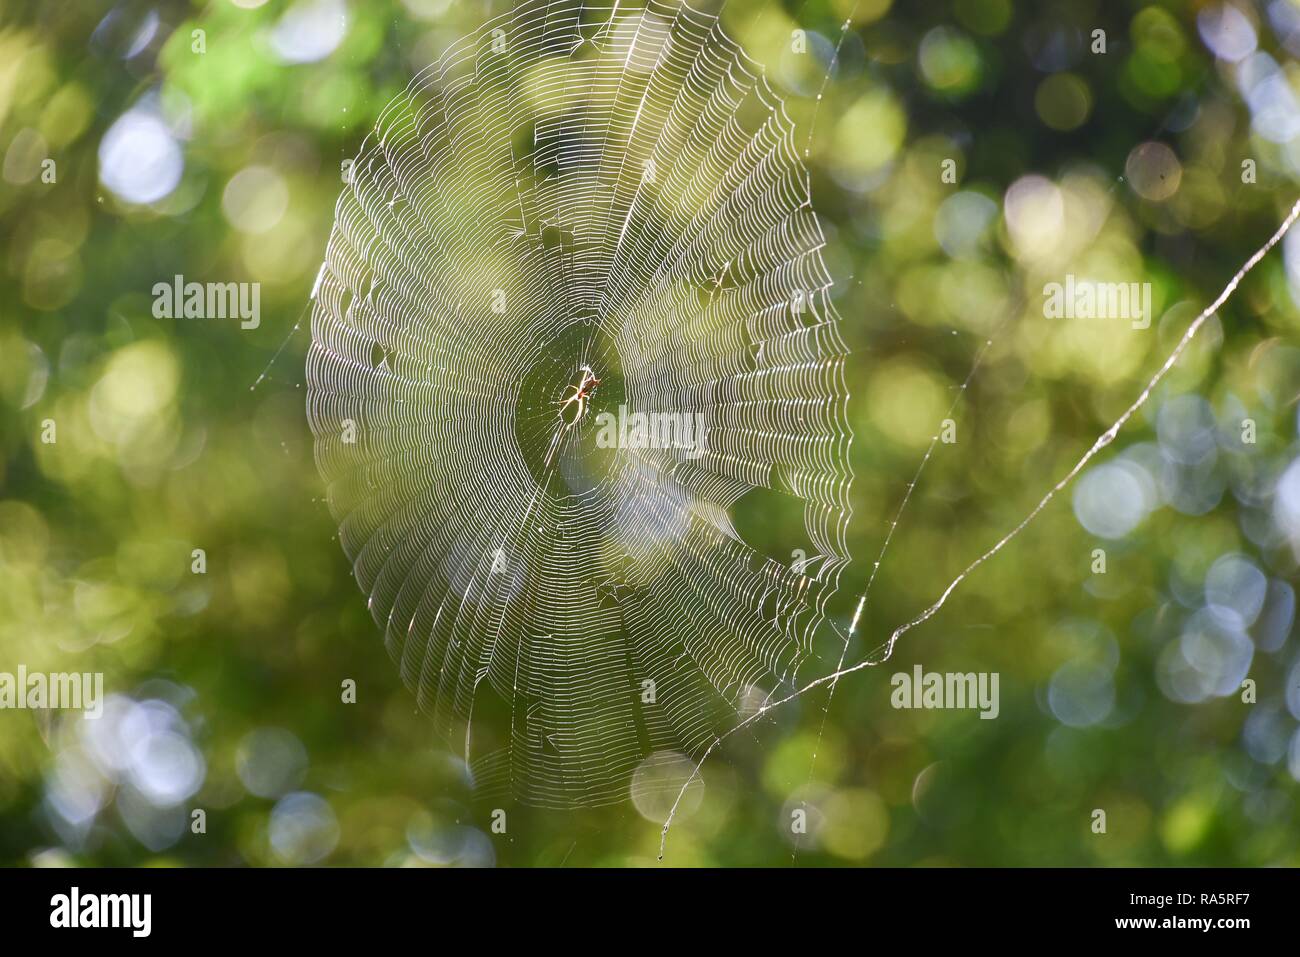 Con tela de araña araña en contraluz en frente de hojas verdes, Brasil Foto de stock